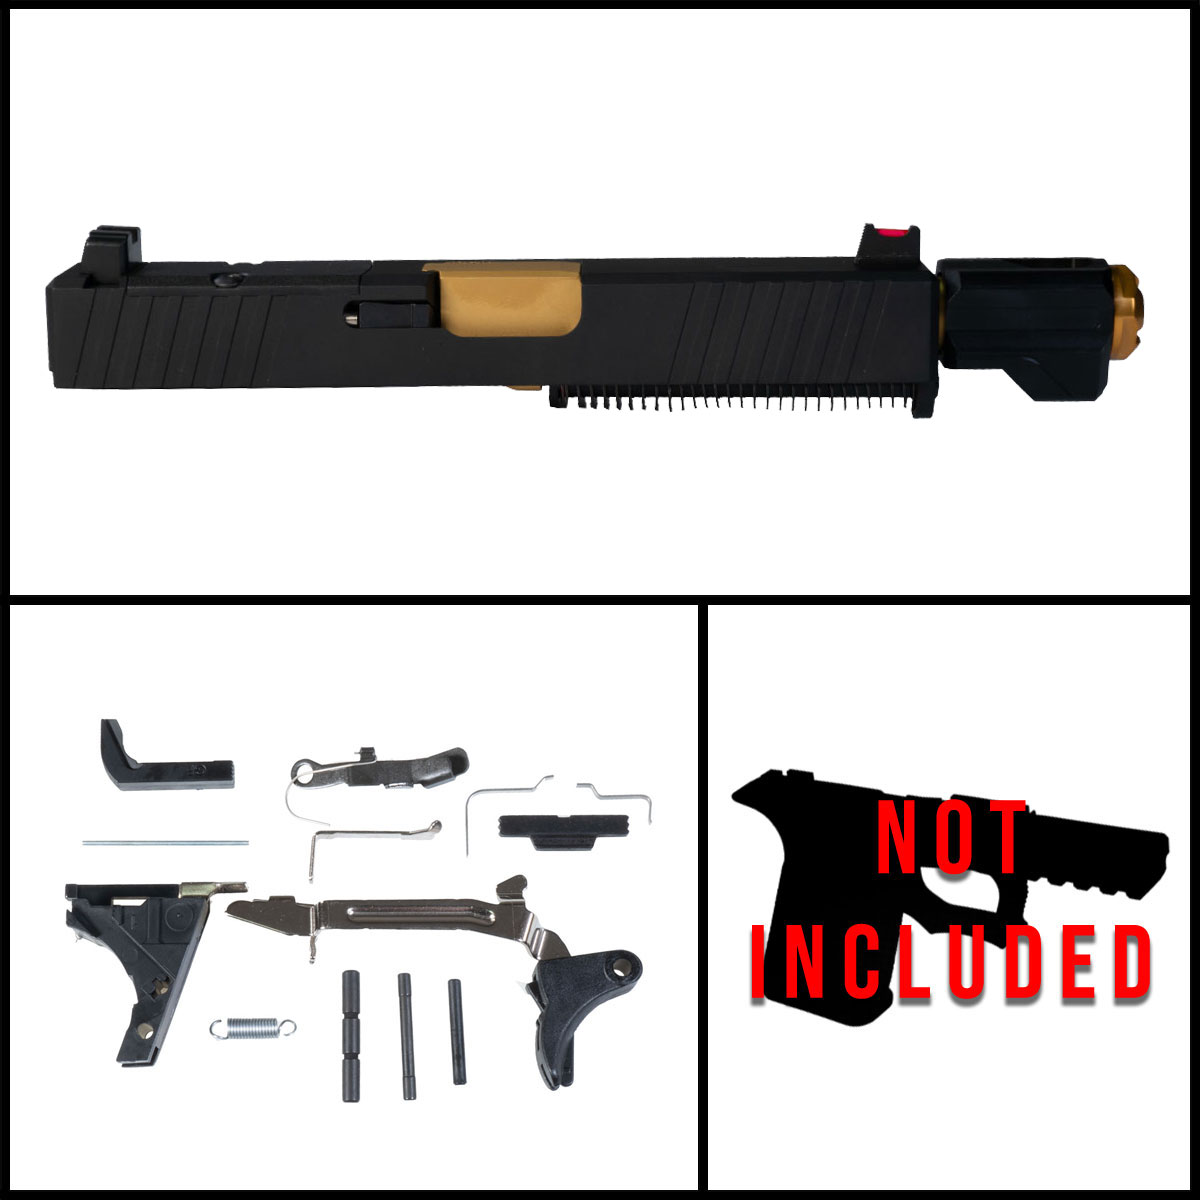 DTT 'Bam w/ Tyrant Designs Compensator' 9mm Full Pistol Build Kit (Everything Minus Frame) - Glock 19 Gen 1-3 Compatible